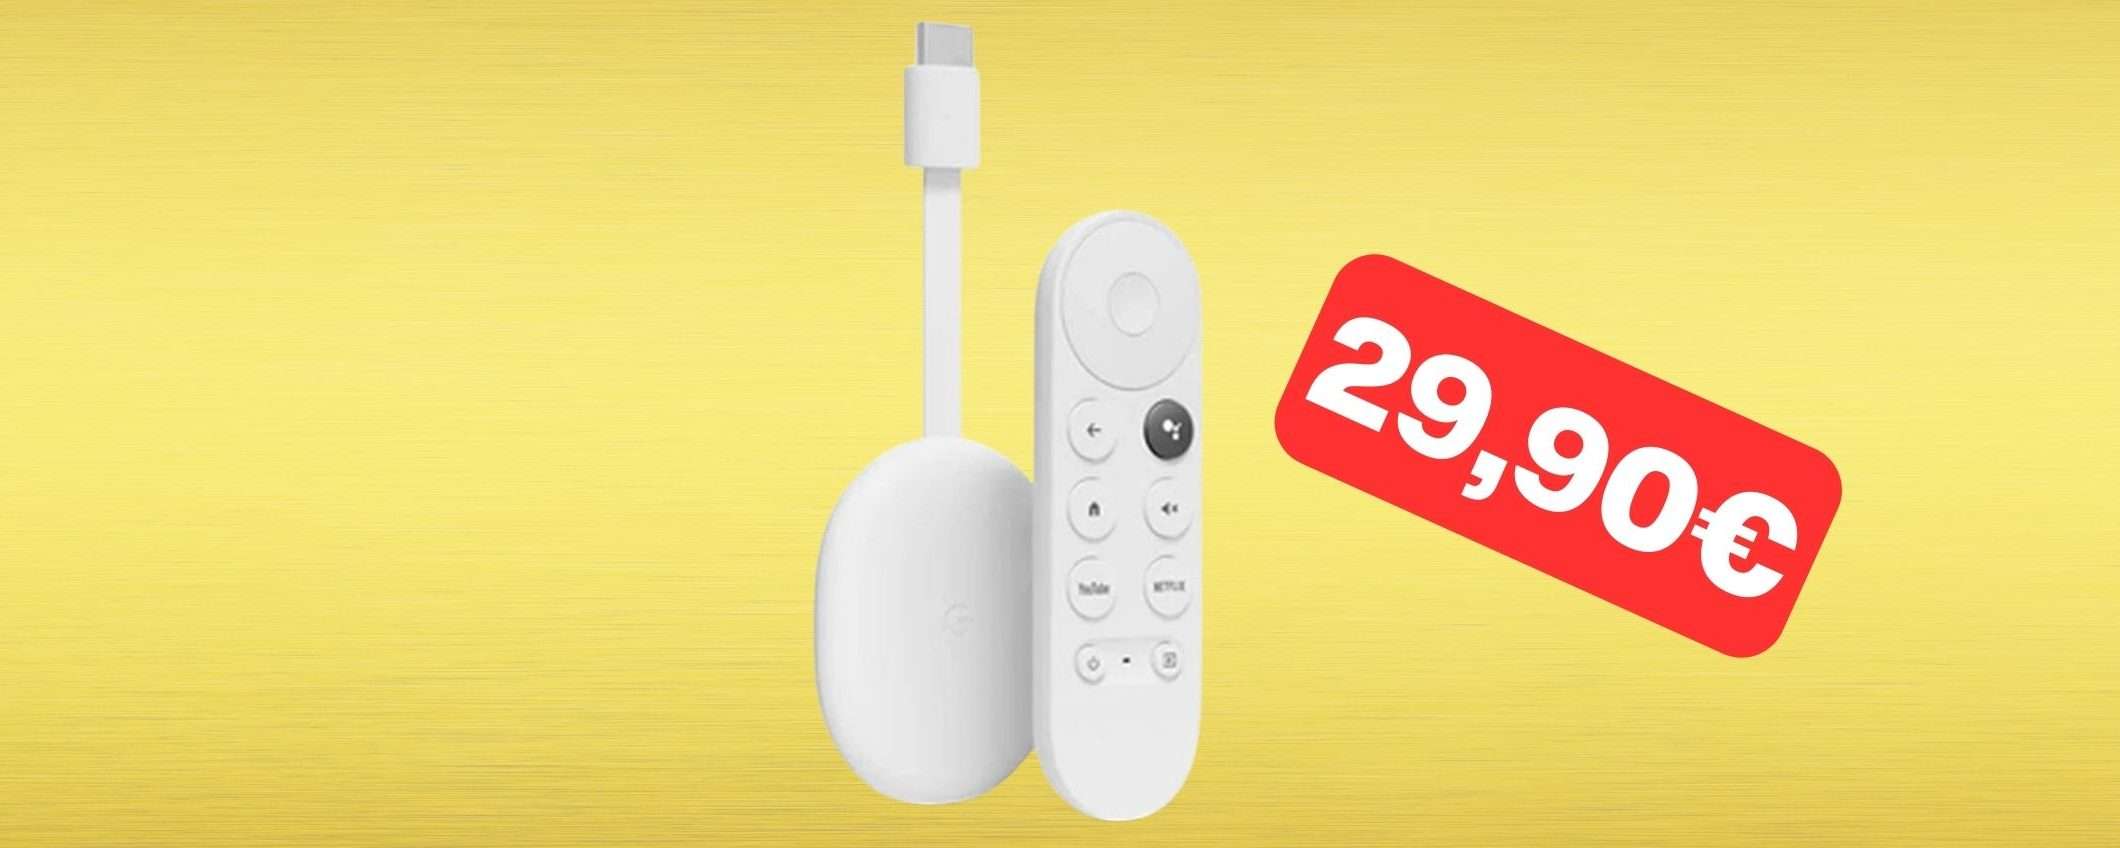 Chromecast con Google TV HD integrato: ottimo prezzo su Amazon (29,90€)